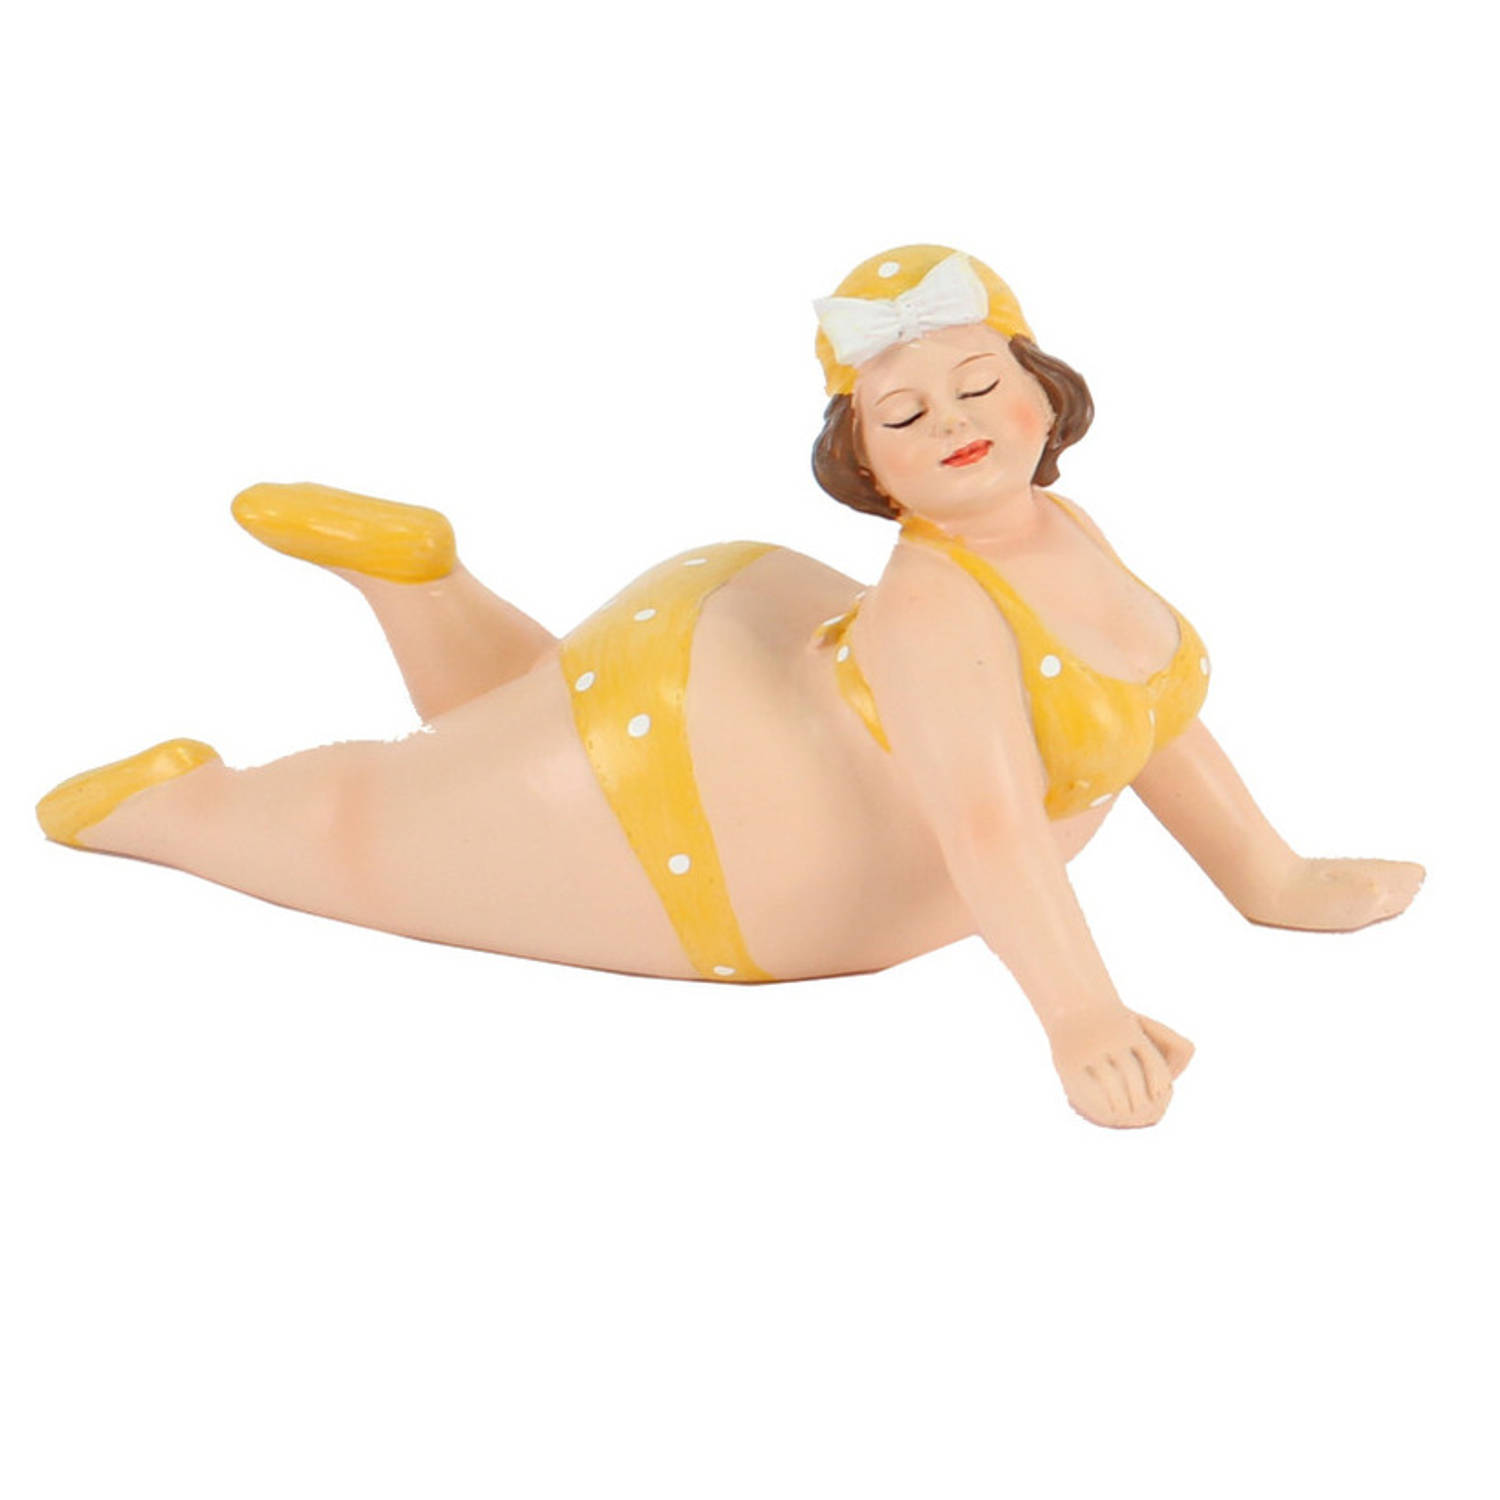 Home decoratie beeldje dikke dame liggend geel badpak 20 cm Beeldjes